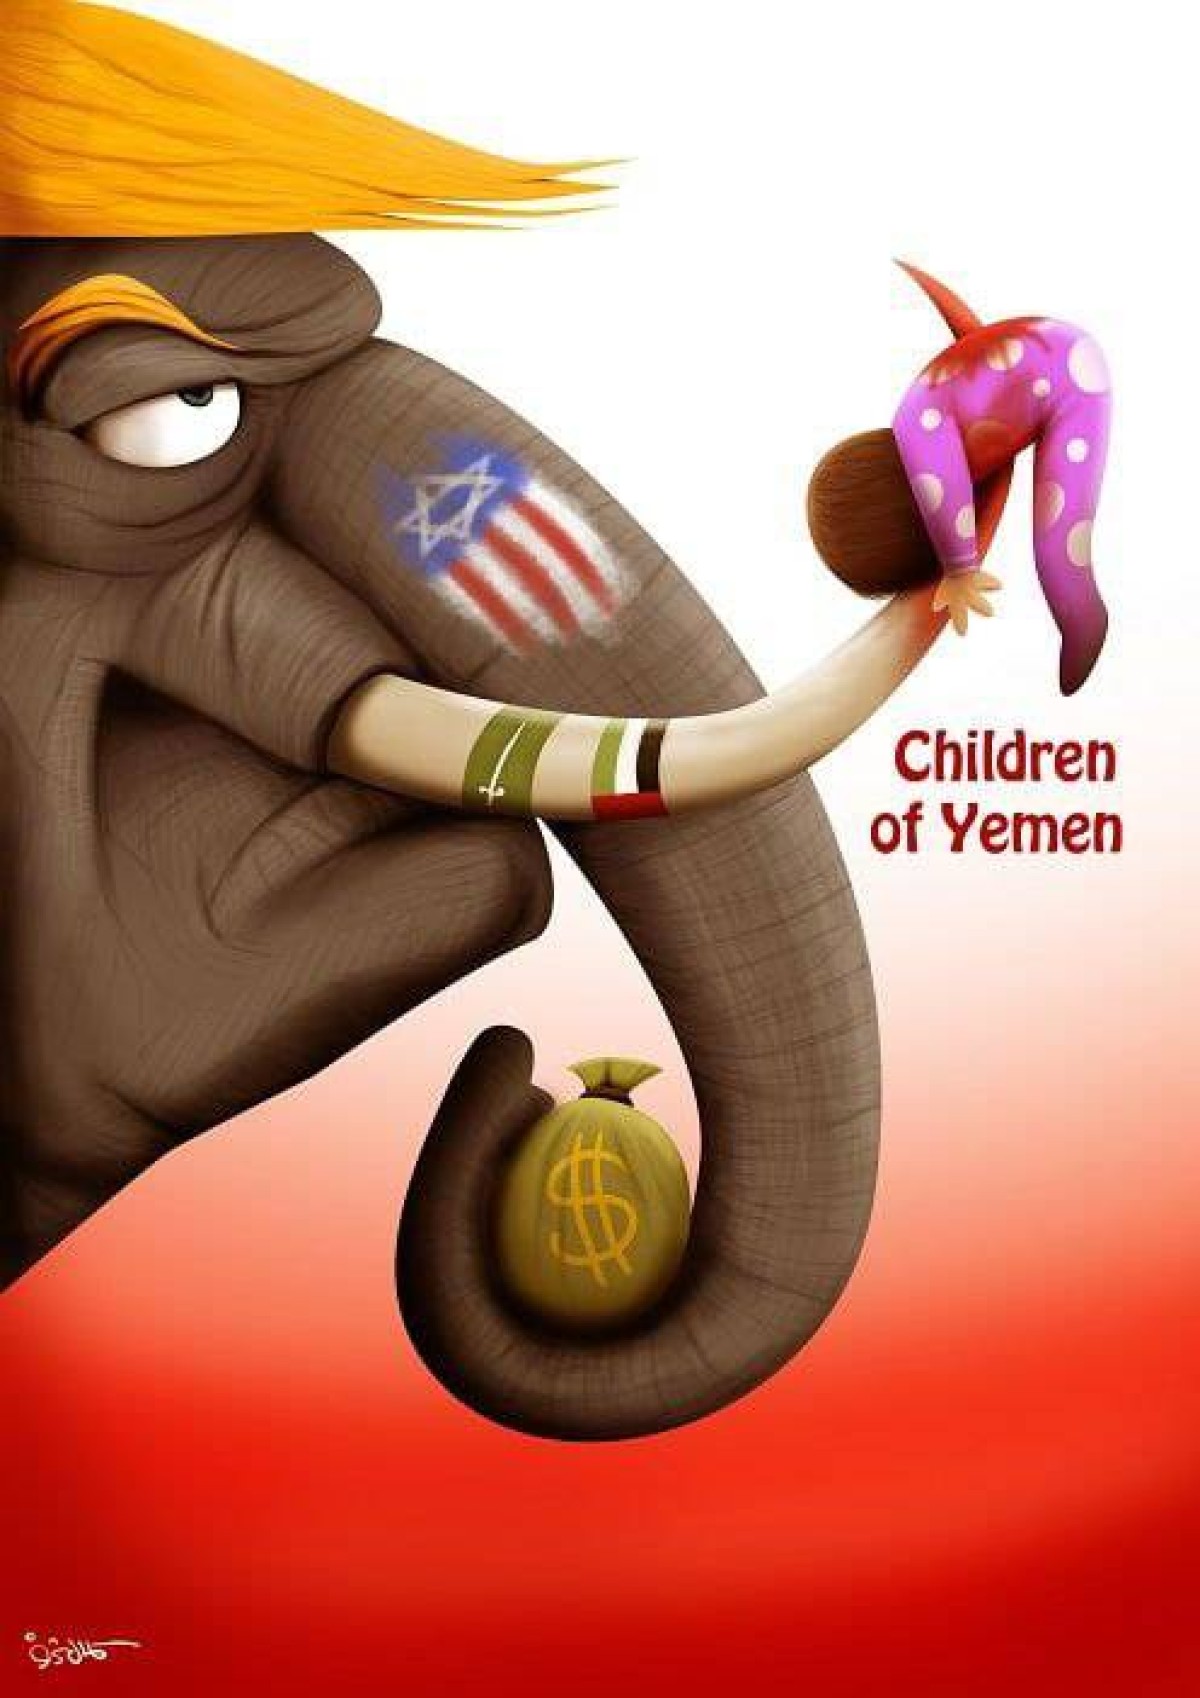 Children of Yemen